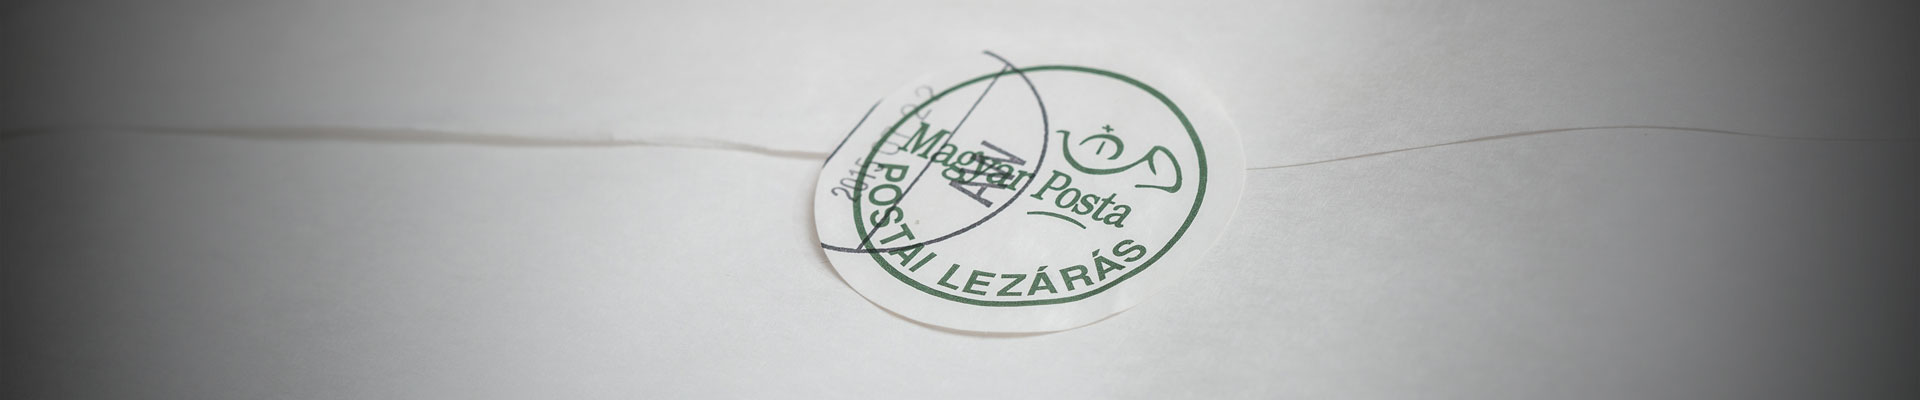 A képen egy Postai lezárás feliratú címke látható.